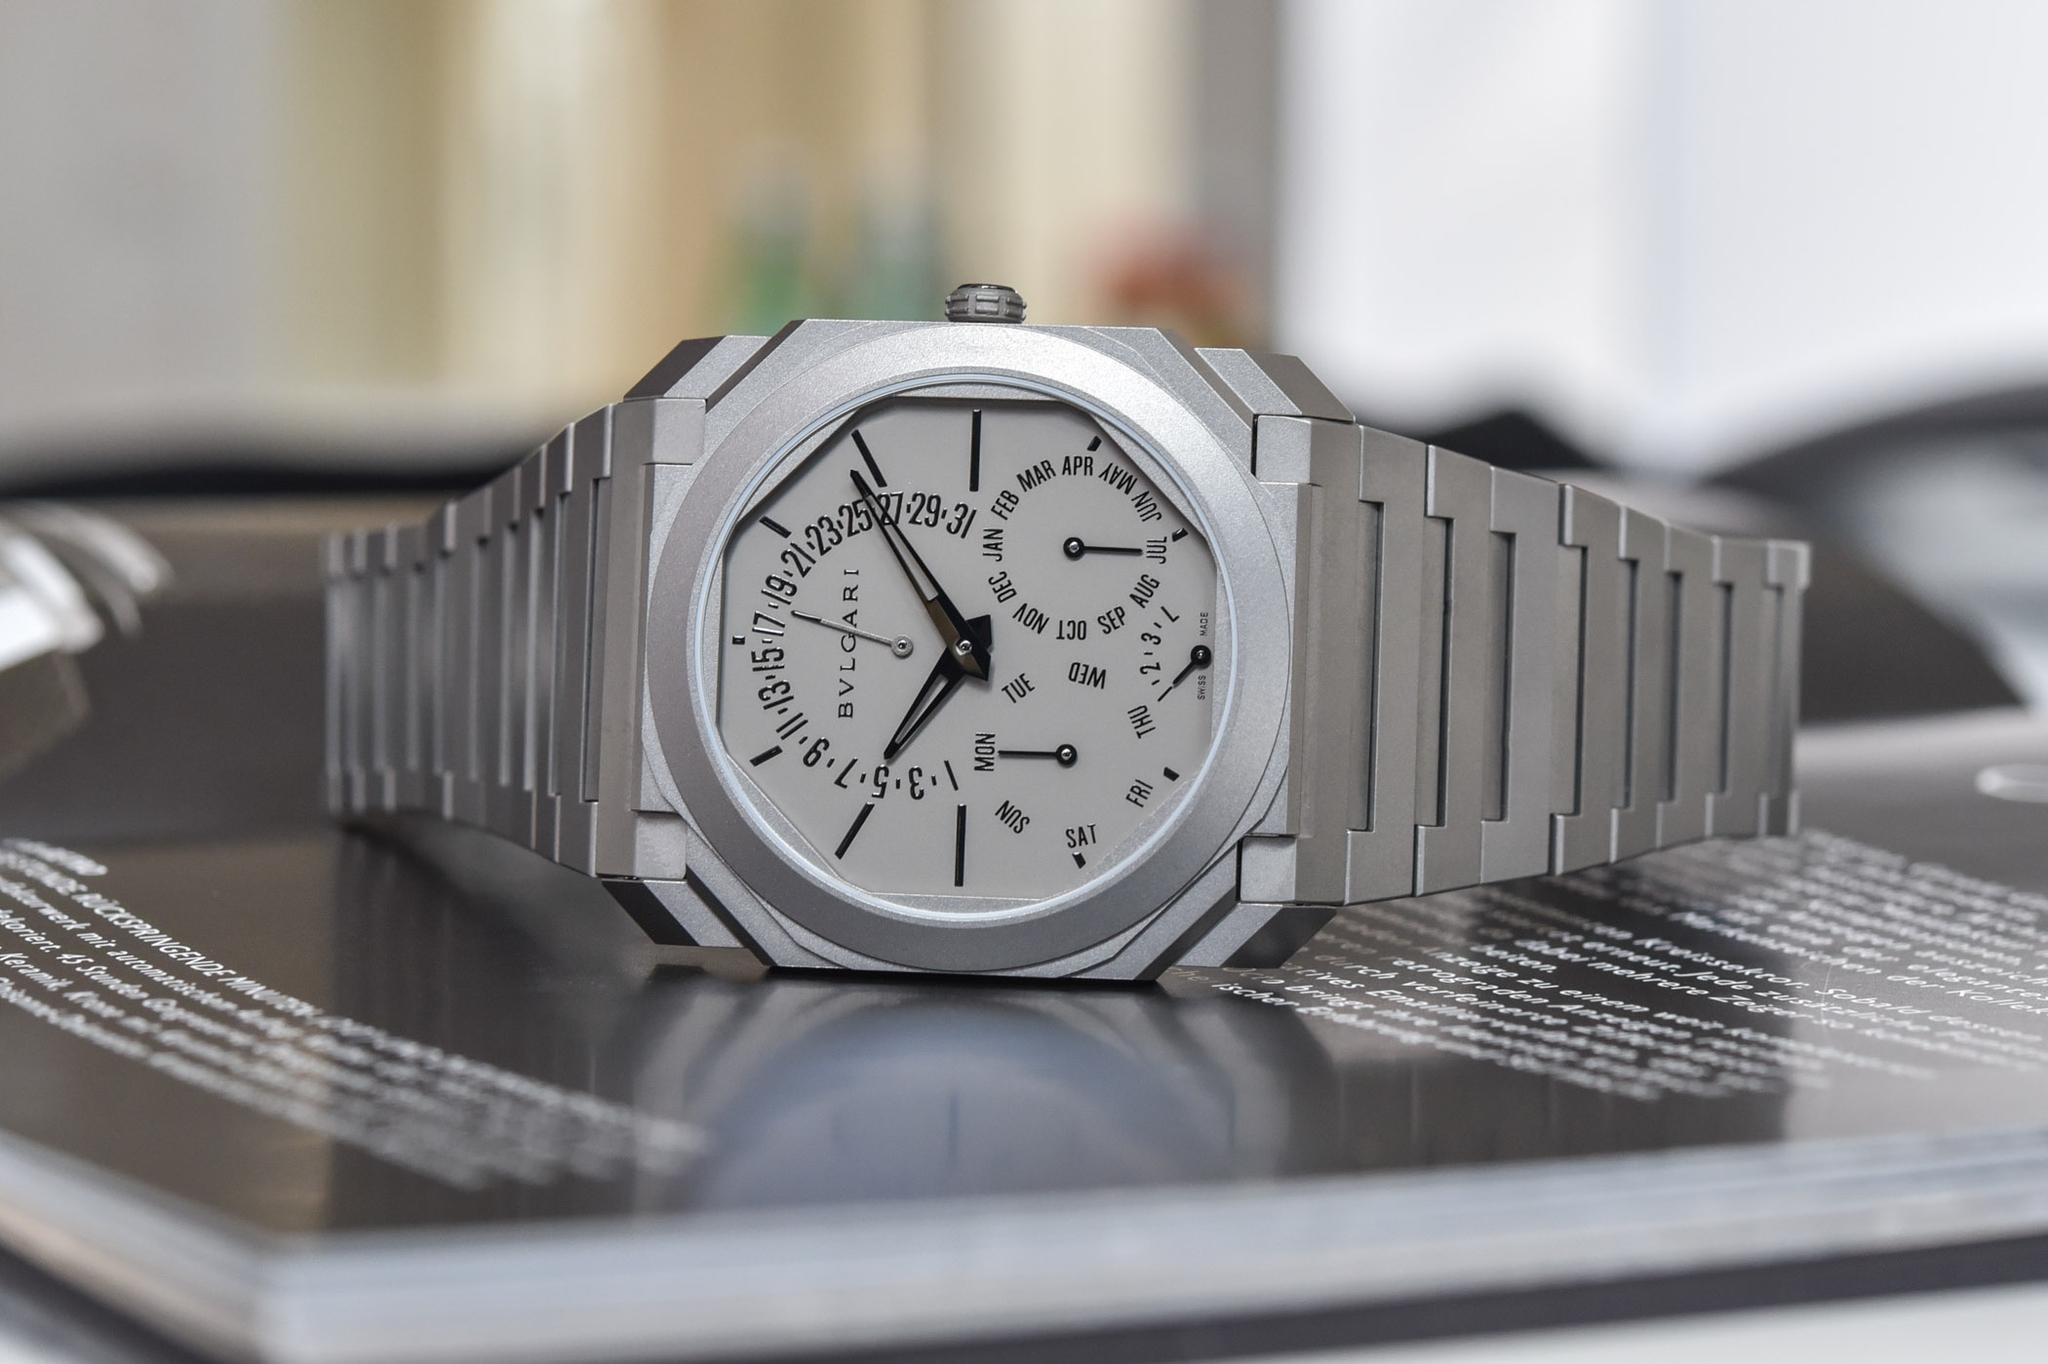 Đồng hồ Octo Finissimo Perpetual Calendar bản thương mại ra mắt đầu năm 2021